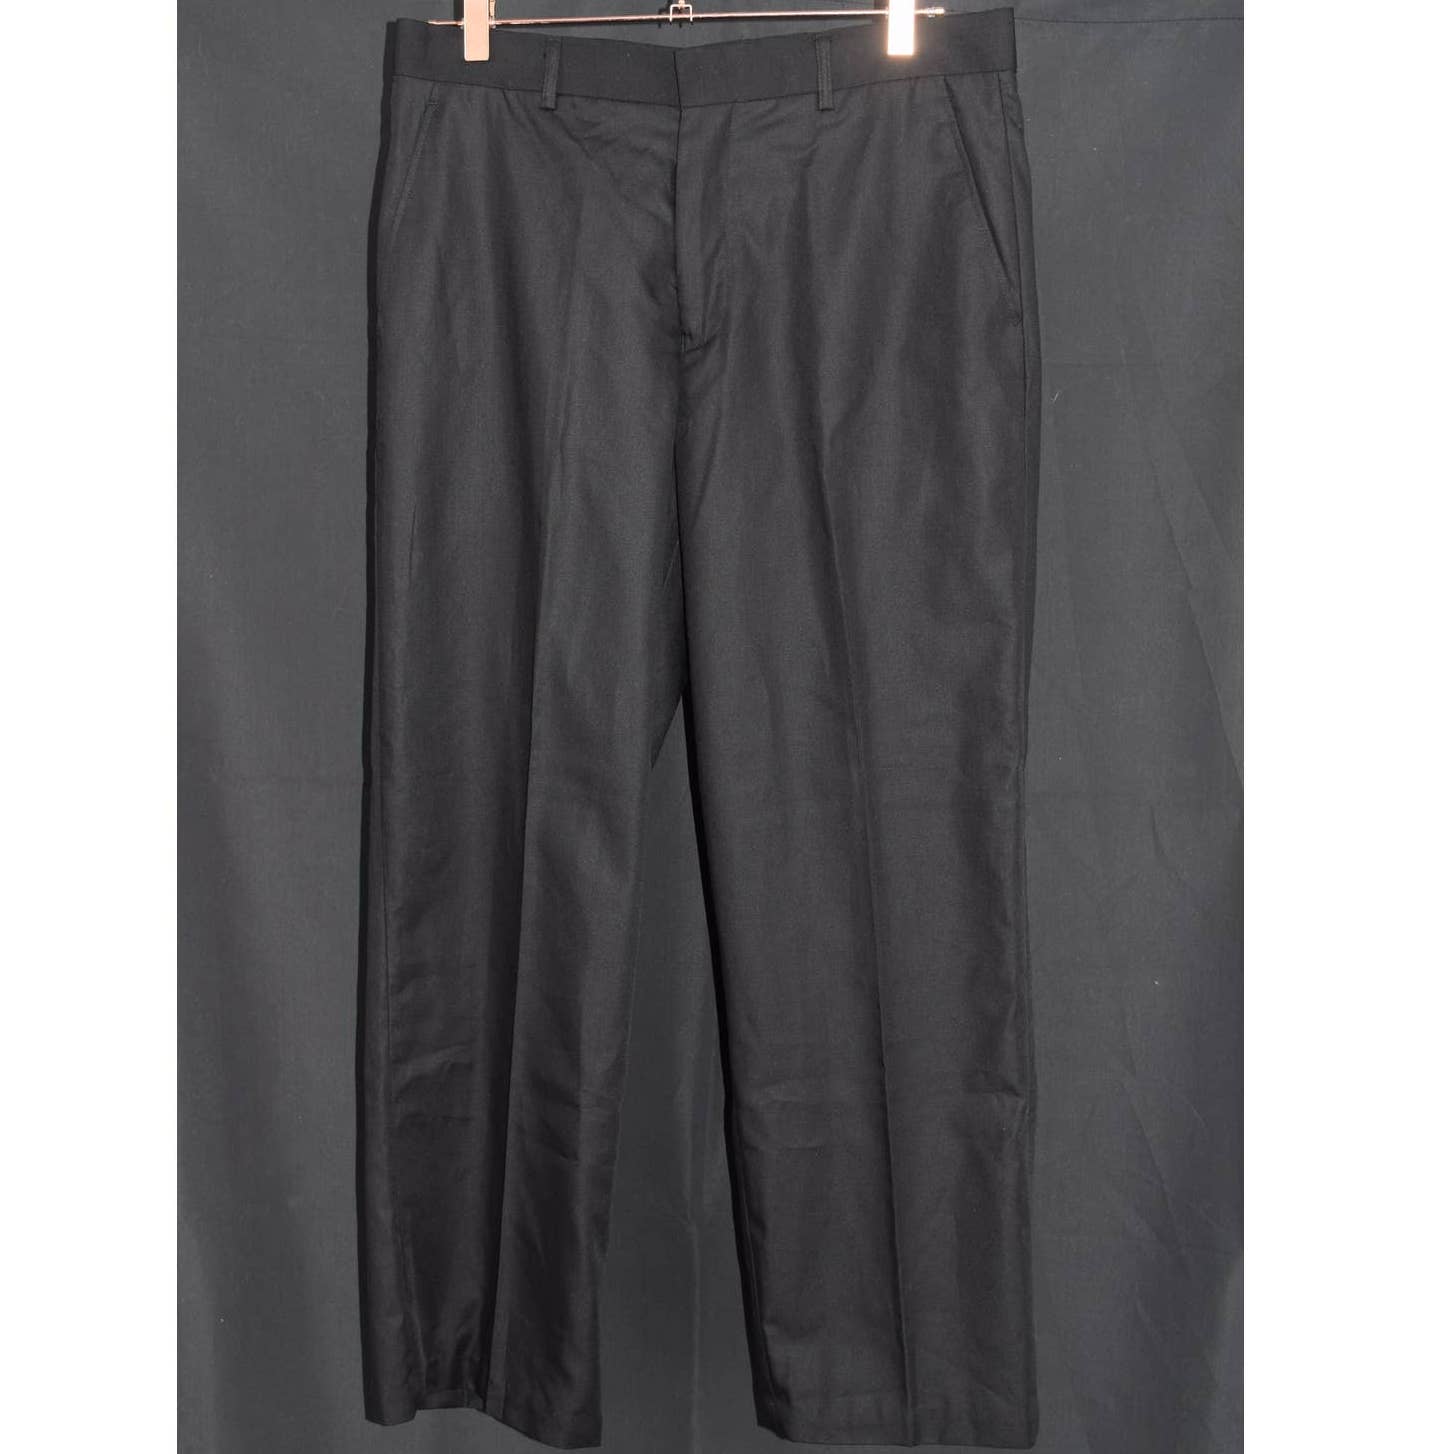 Ted Lapidus Black Flat Front Pants - 34